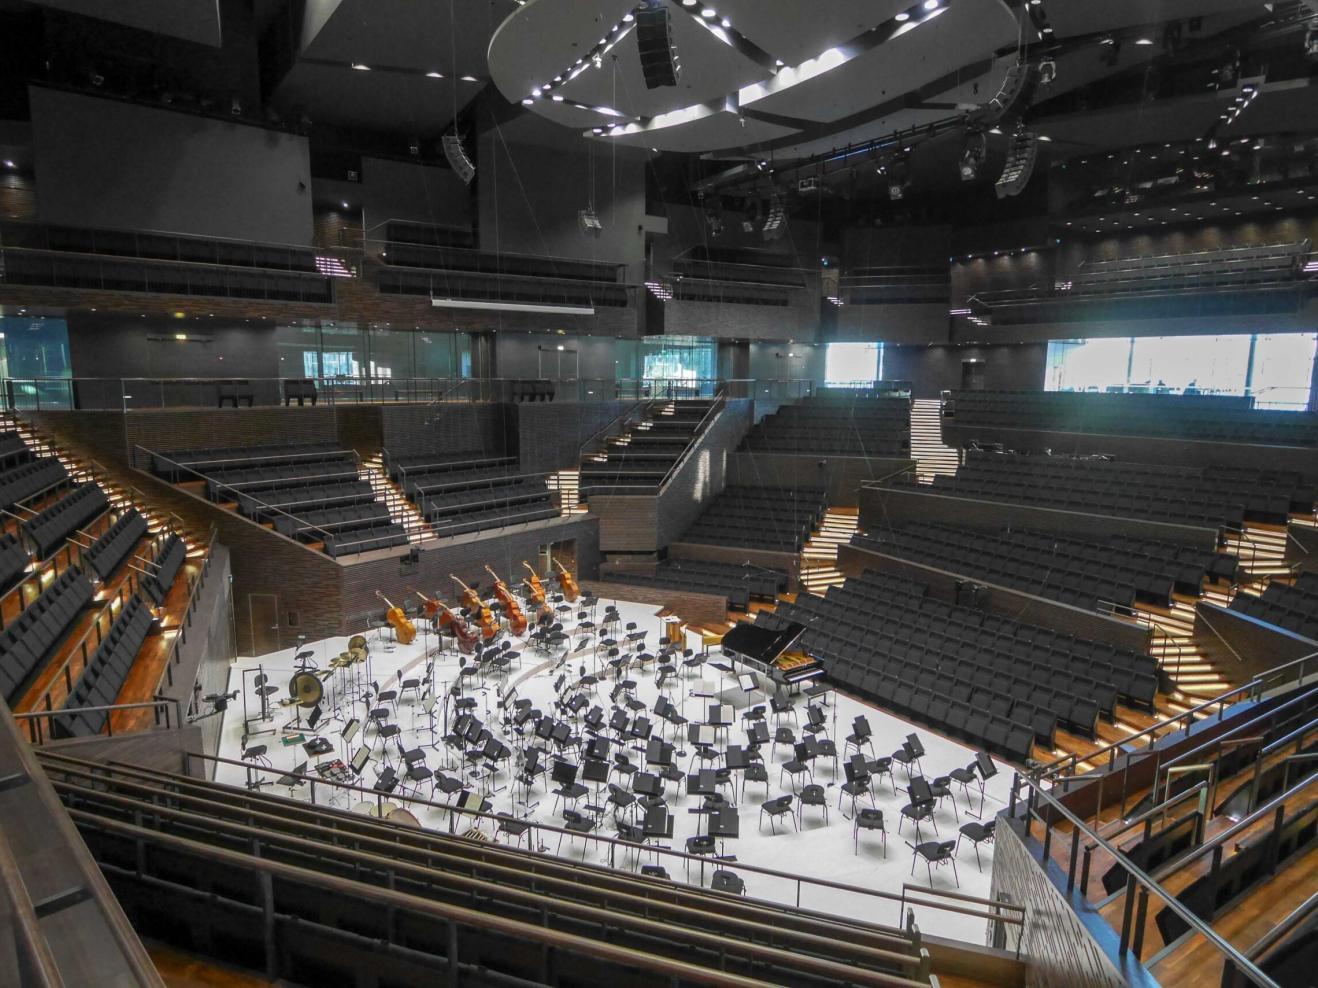 Blick in den leeren Konzertsaal des Helsinki Music Center, die Bühne ist für ein Orchester eingerichtet, die Plätze für Publikum leer.